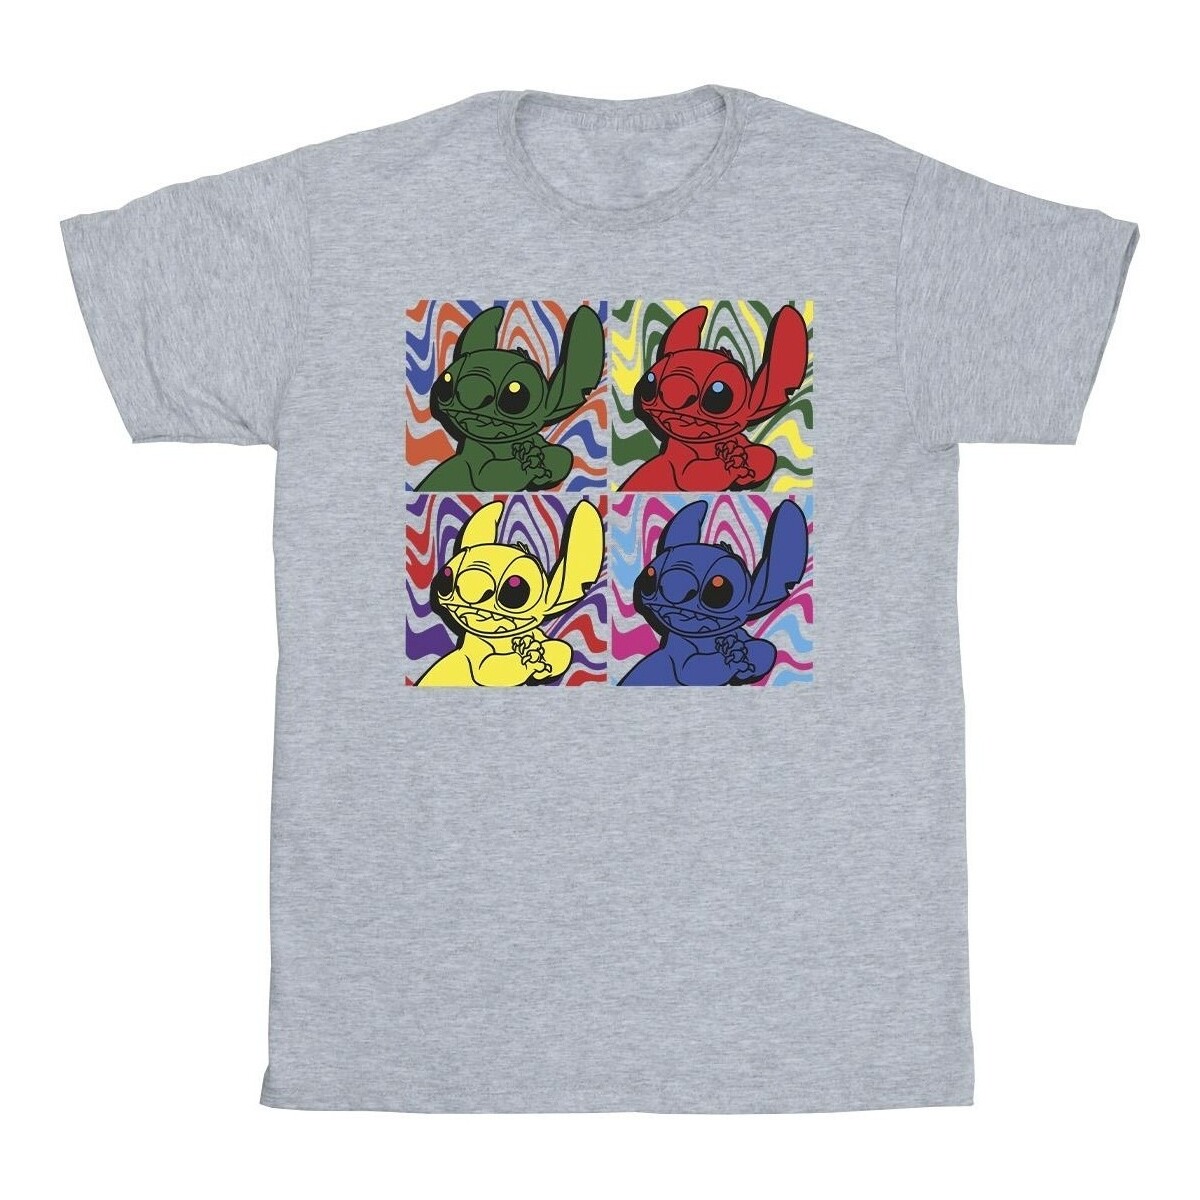 Vêtements Garçon T-shirts manches courtes Disney Lilo & Stitch Pop Art Gris